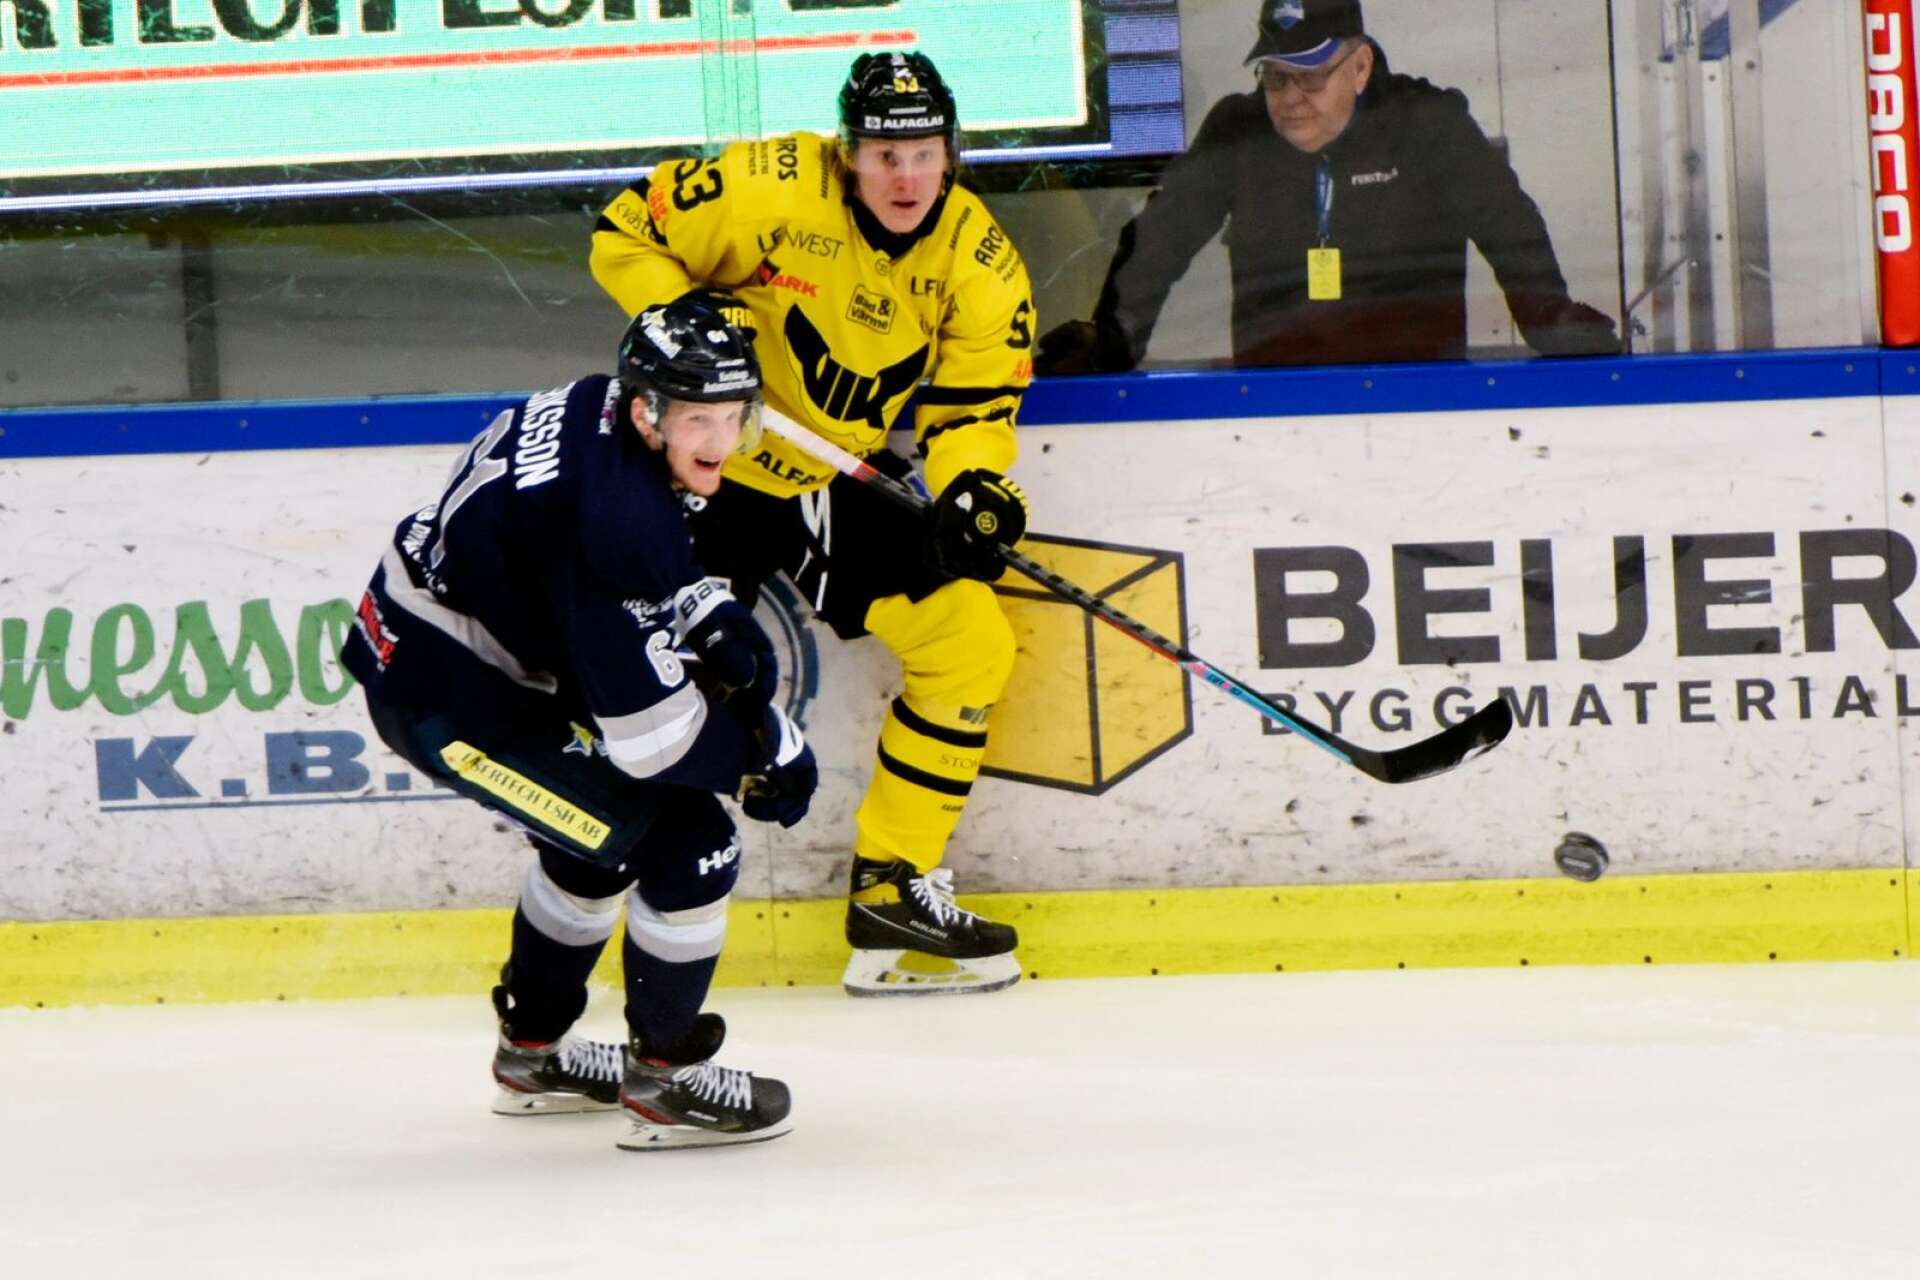 BIK:s Mikael ”Daggen” Eriksson missar semifinalen och spelade bara de två första kvartsfinalerna mot Västerås på grund av skada.